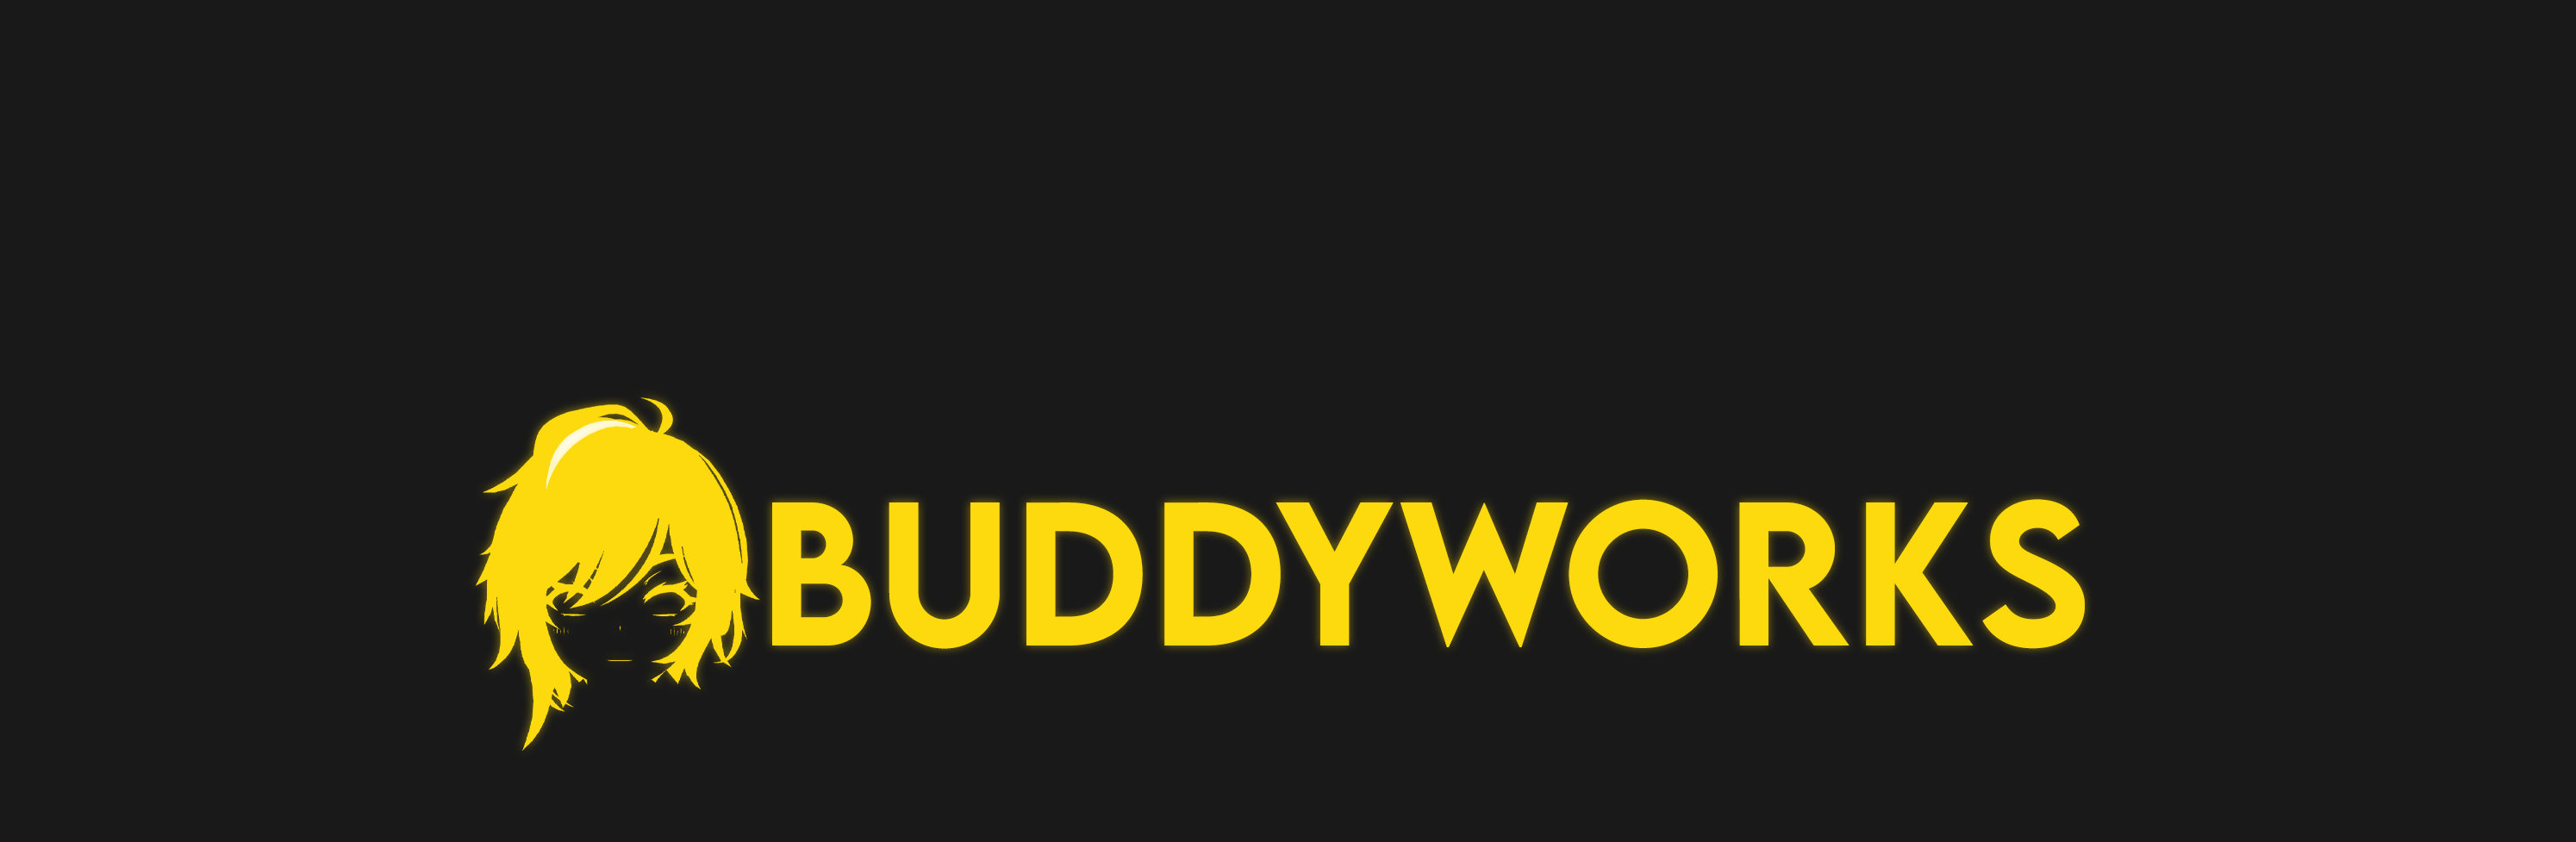 buddyworks